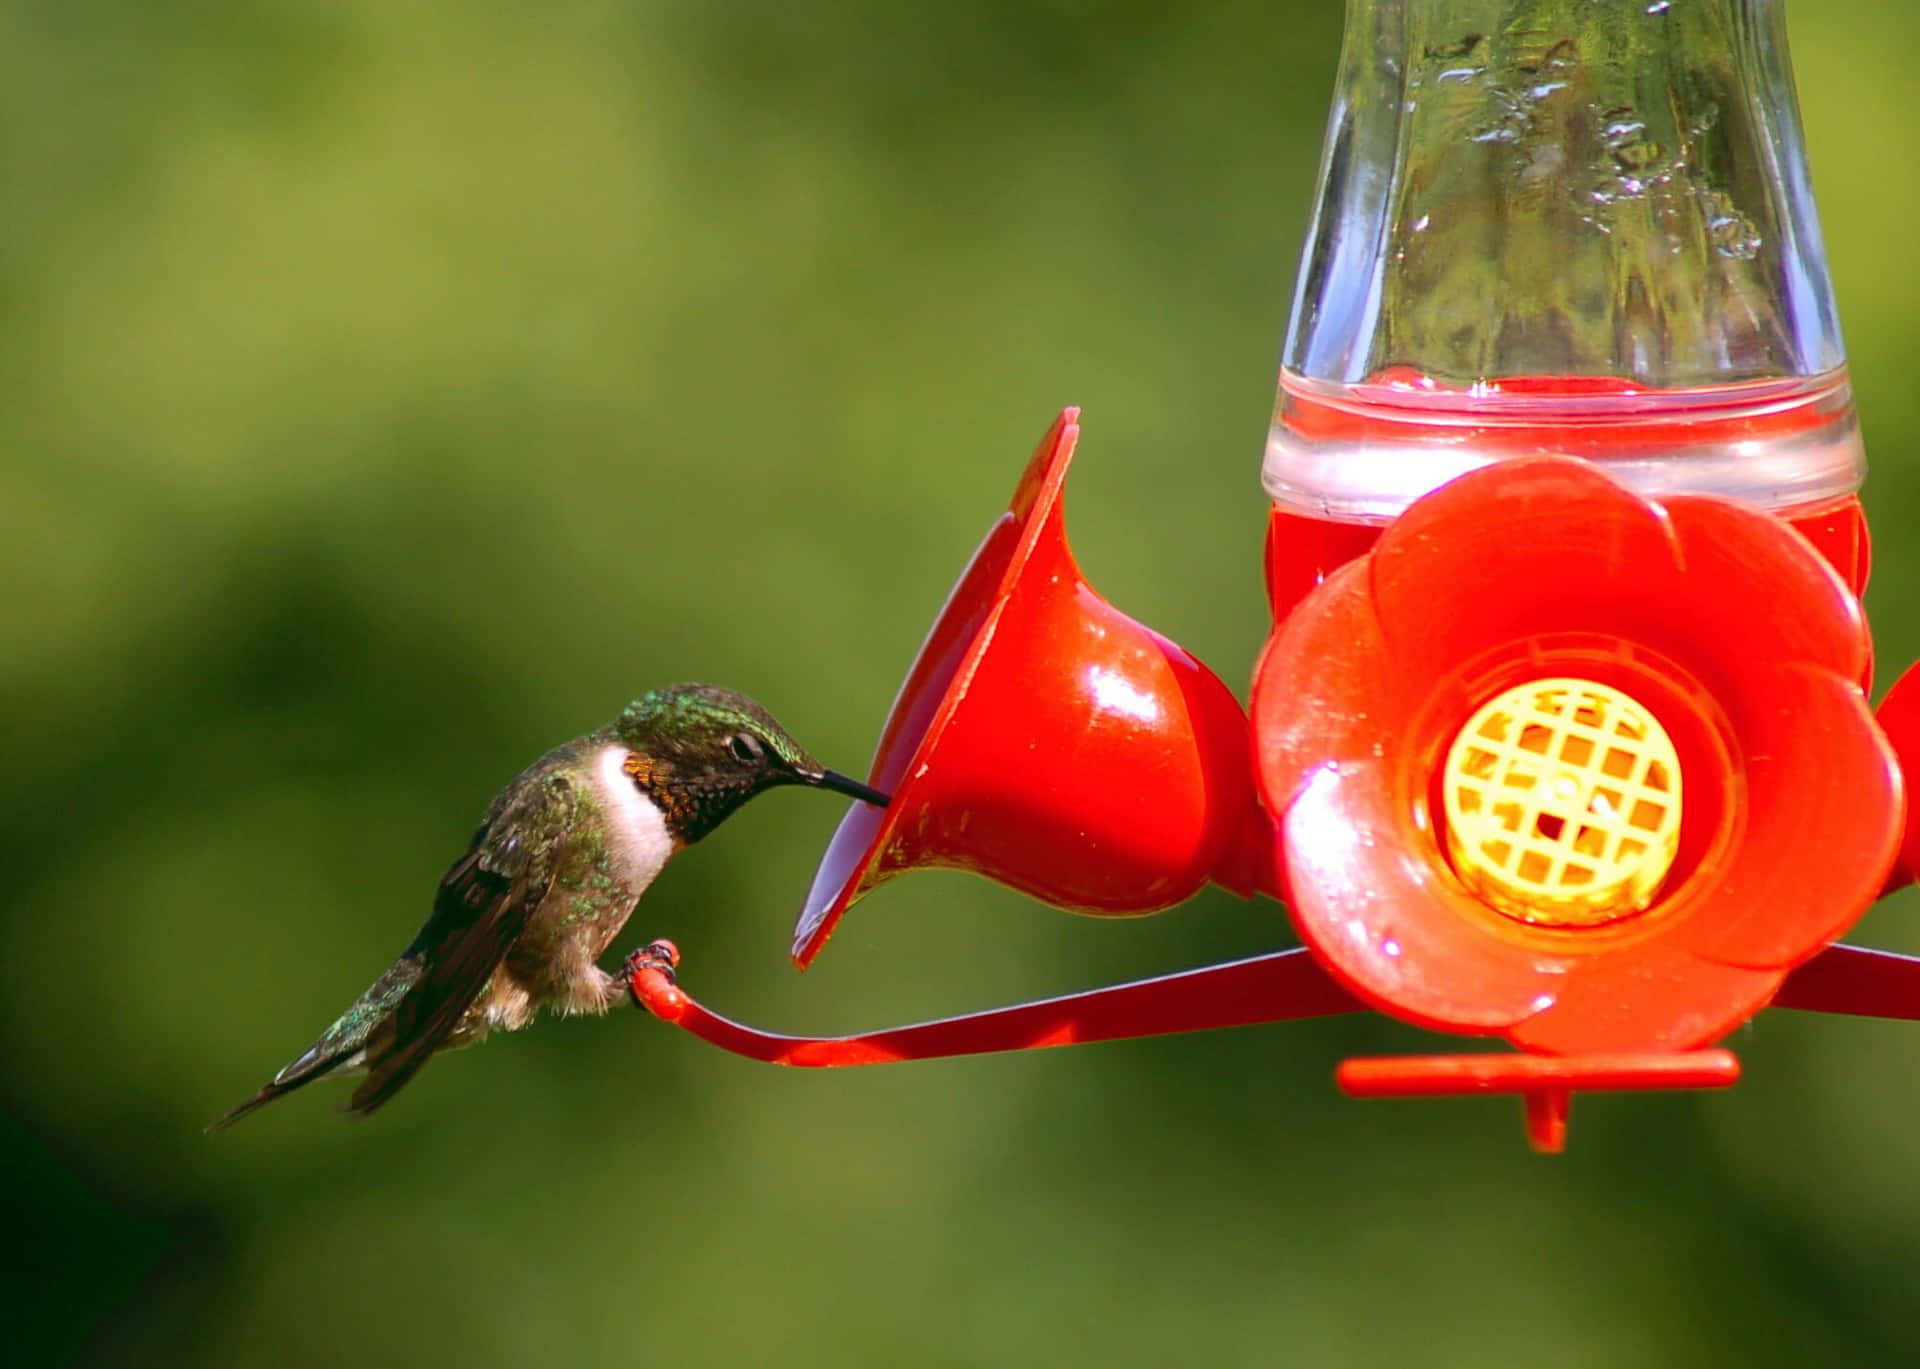 Hummingbird billede-udsigt: Se et smukt billede af disse elegante fugle, der svæver i luften.